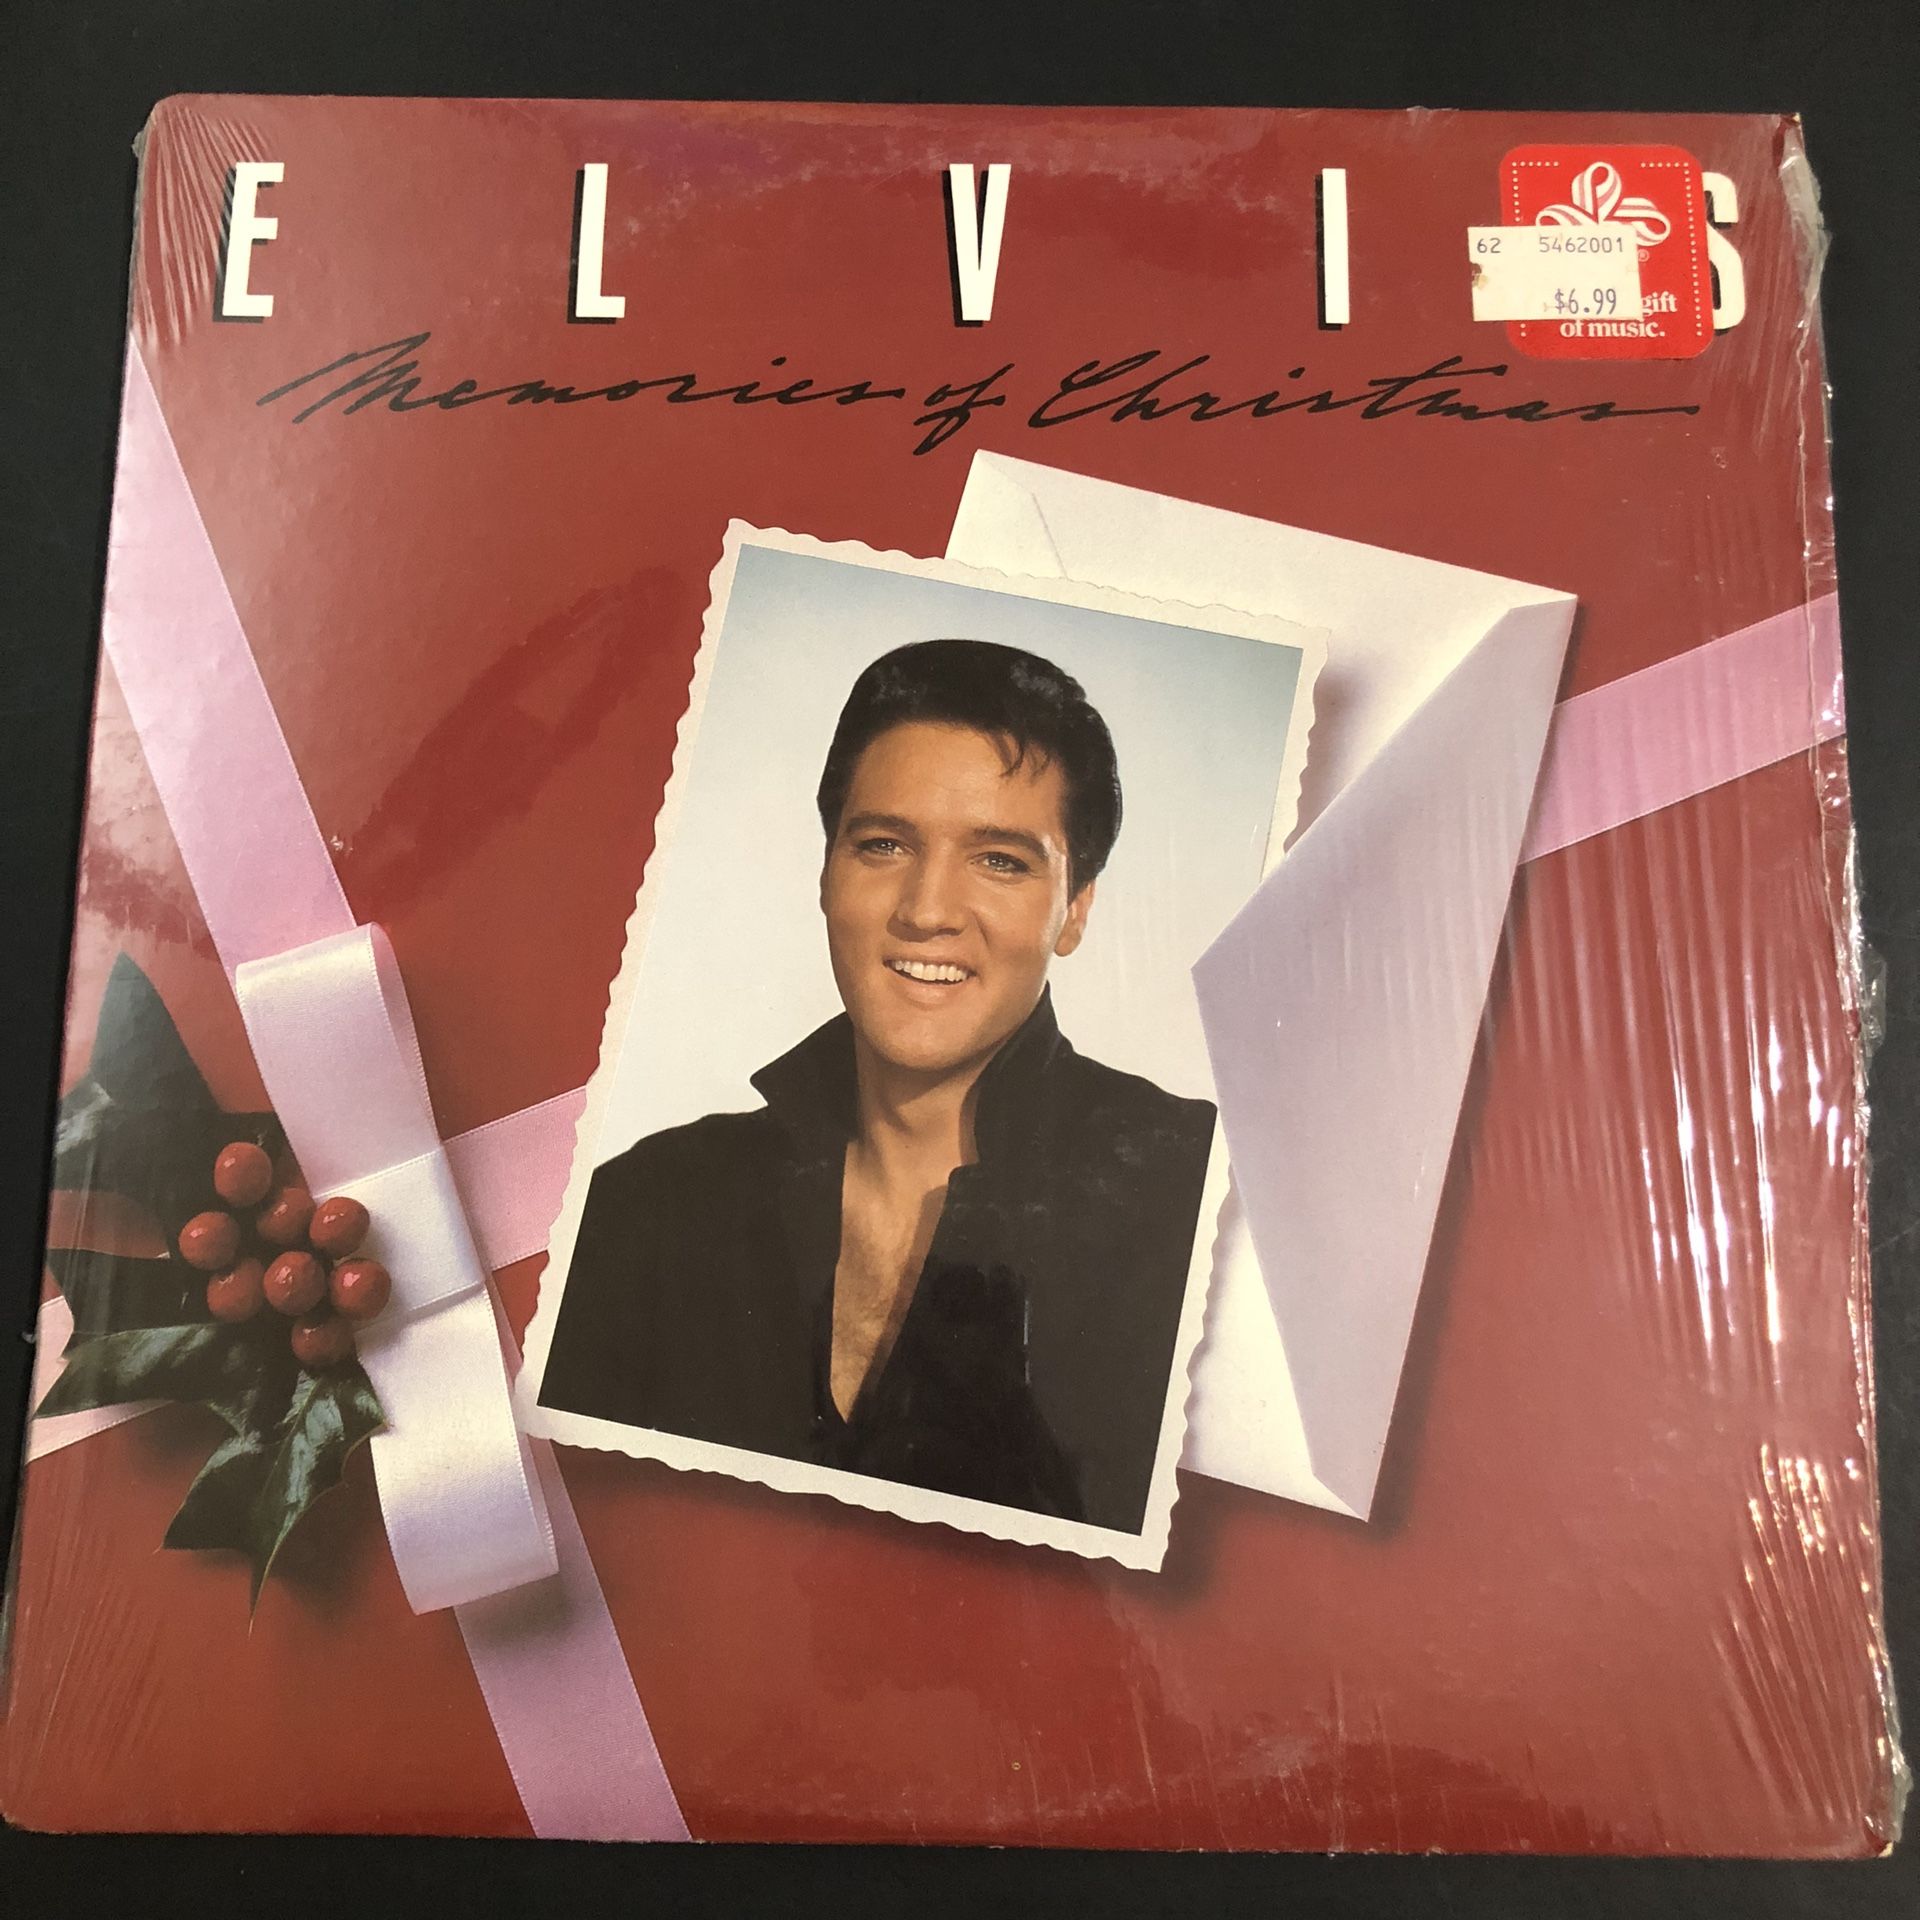 Elvis memories of Christmas vintage vinyl